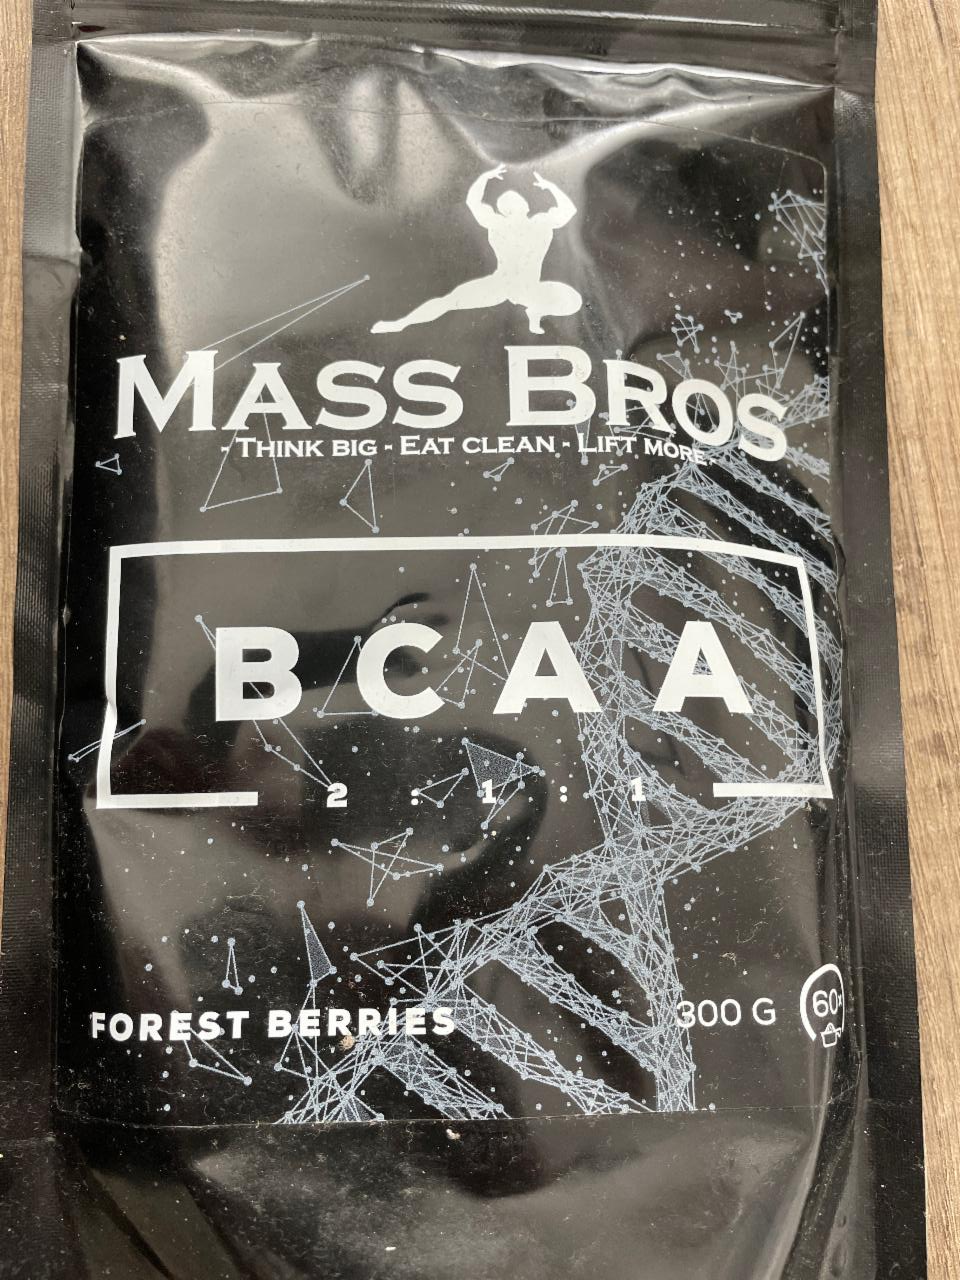 Fotografie - BCAA Forest Berries Mass Bros